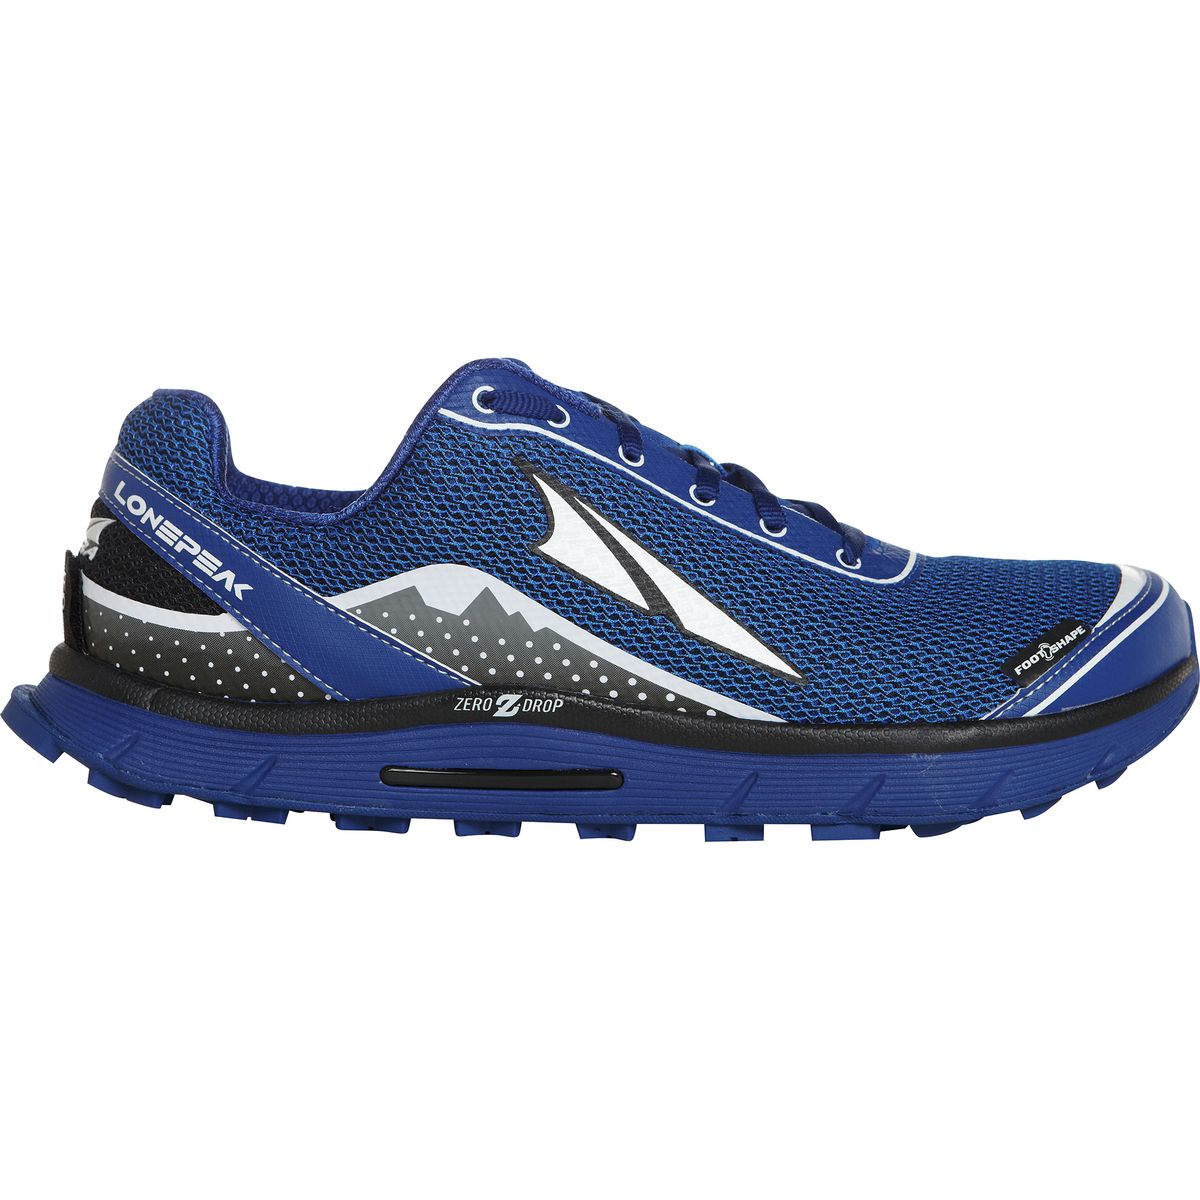 Altra Lone Peak 2.5 Trail Running Shoe - Men's - Footwear